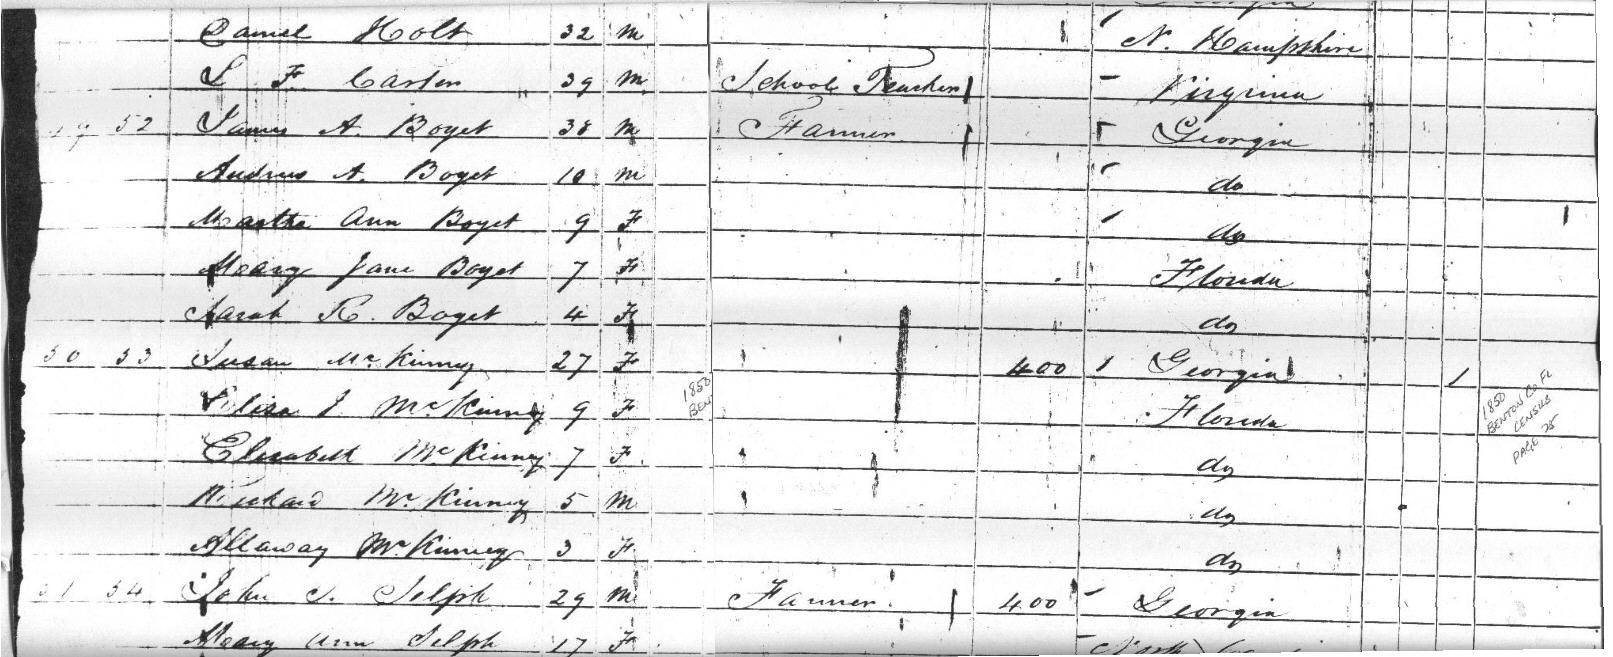 1850 Benton Co Census page 25 mid